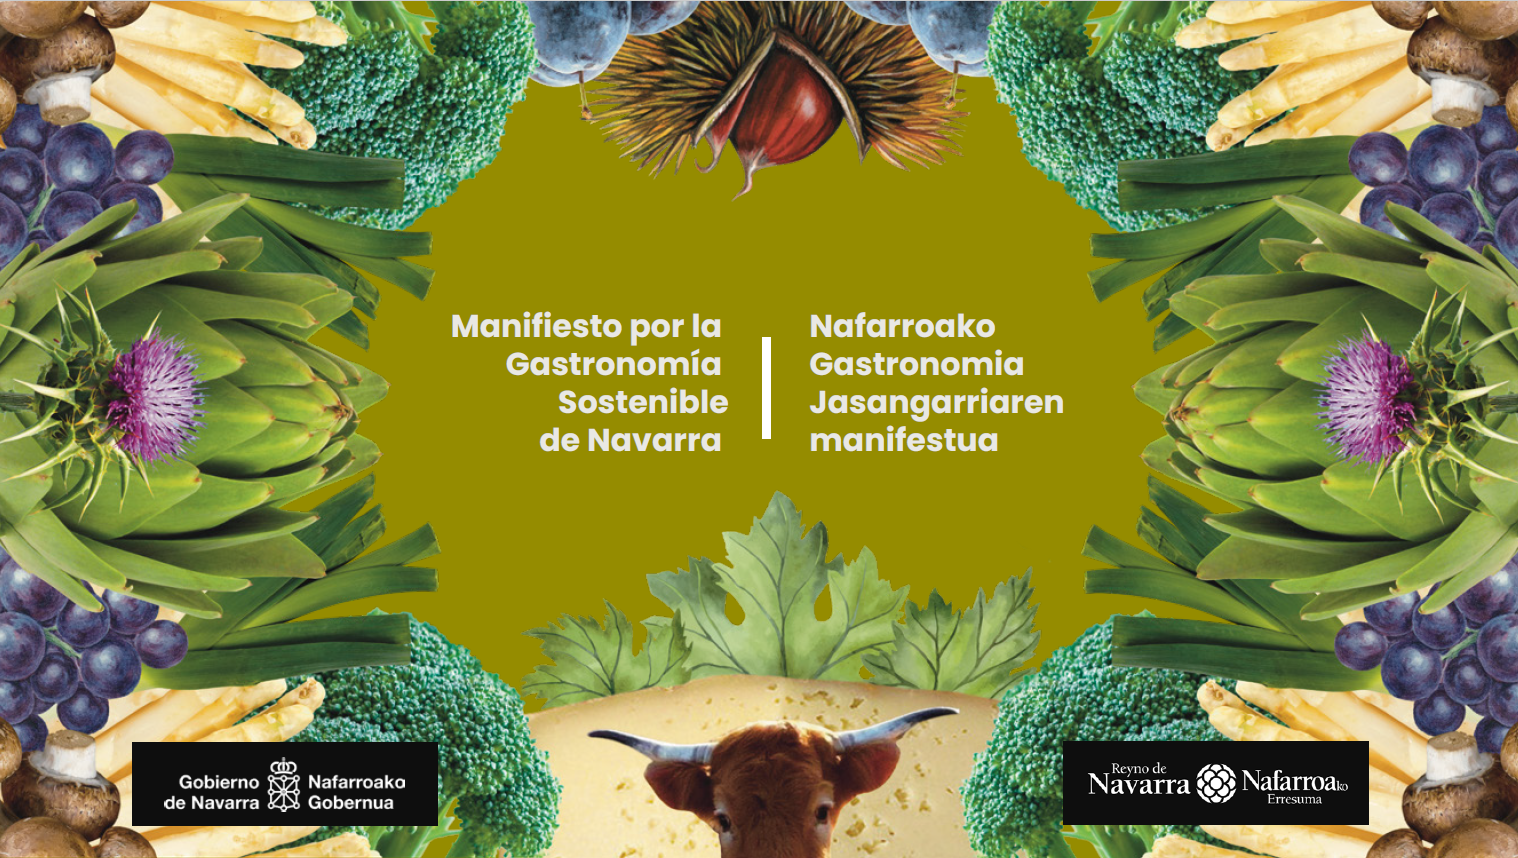 Se presenta el Manifiesto de la Gastronomía Sostenible de Navarra